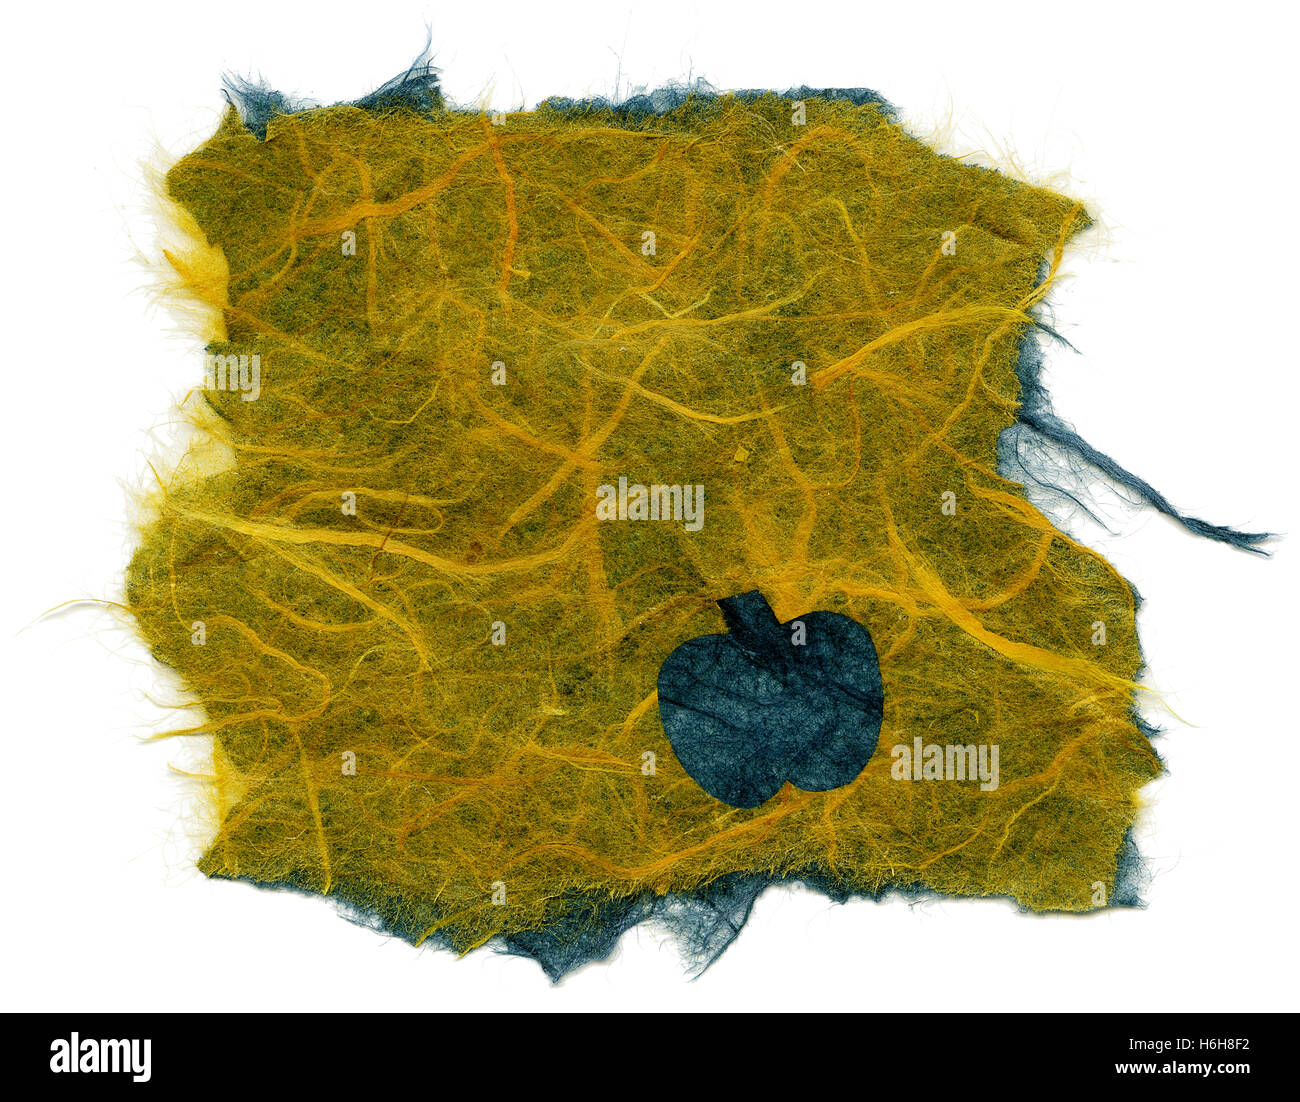 Textur des gelben Reispapier mit blauen Früchte (vielleicht Apfel) Verzierung der Oberfläche, mit zerrissenen Kanten. Isoliert auf weißem Hintergrund Stockfoto